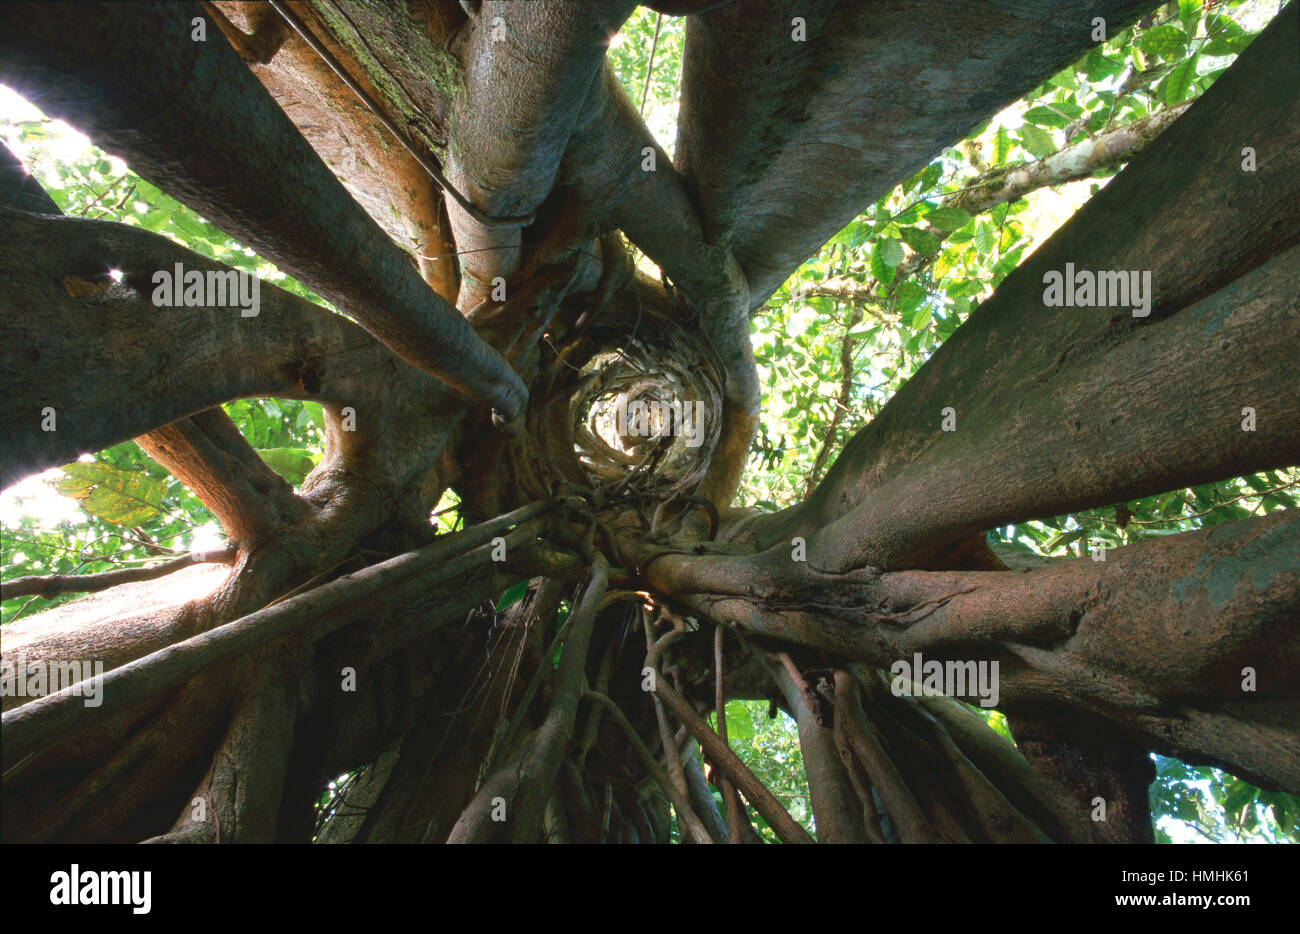 Ver arriba dentro de higuera (Ficus sp.), donde solía estar árbol hospedero (fallecido ya se pudrió). Selva tropical de tierras bajas, Península de Osa, Costa Rica Foto de stock